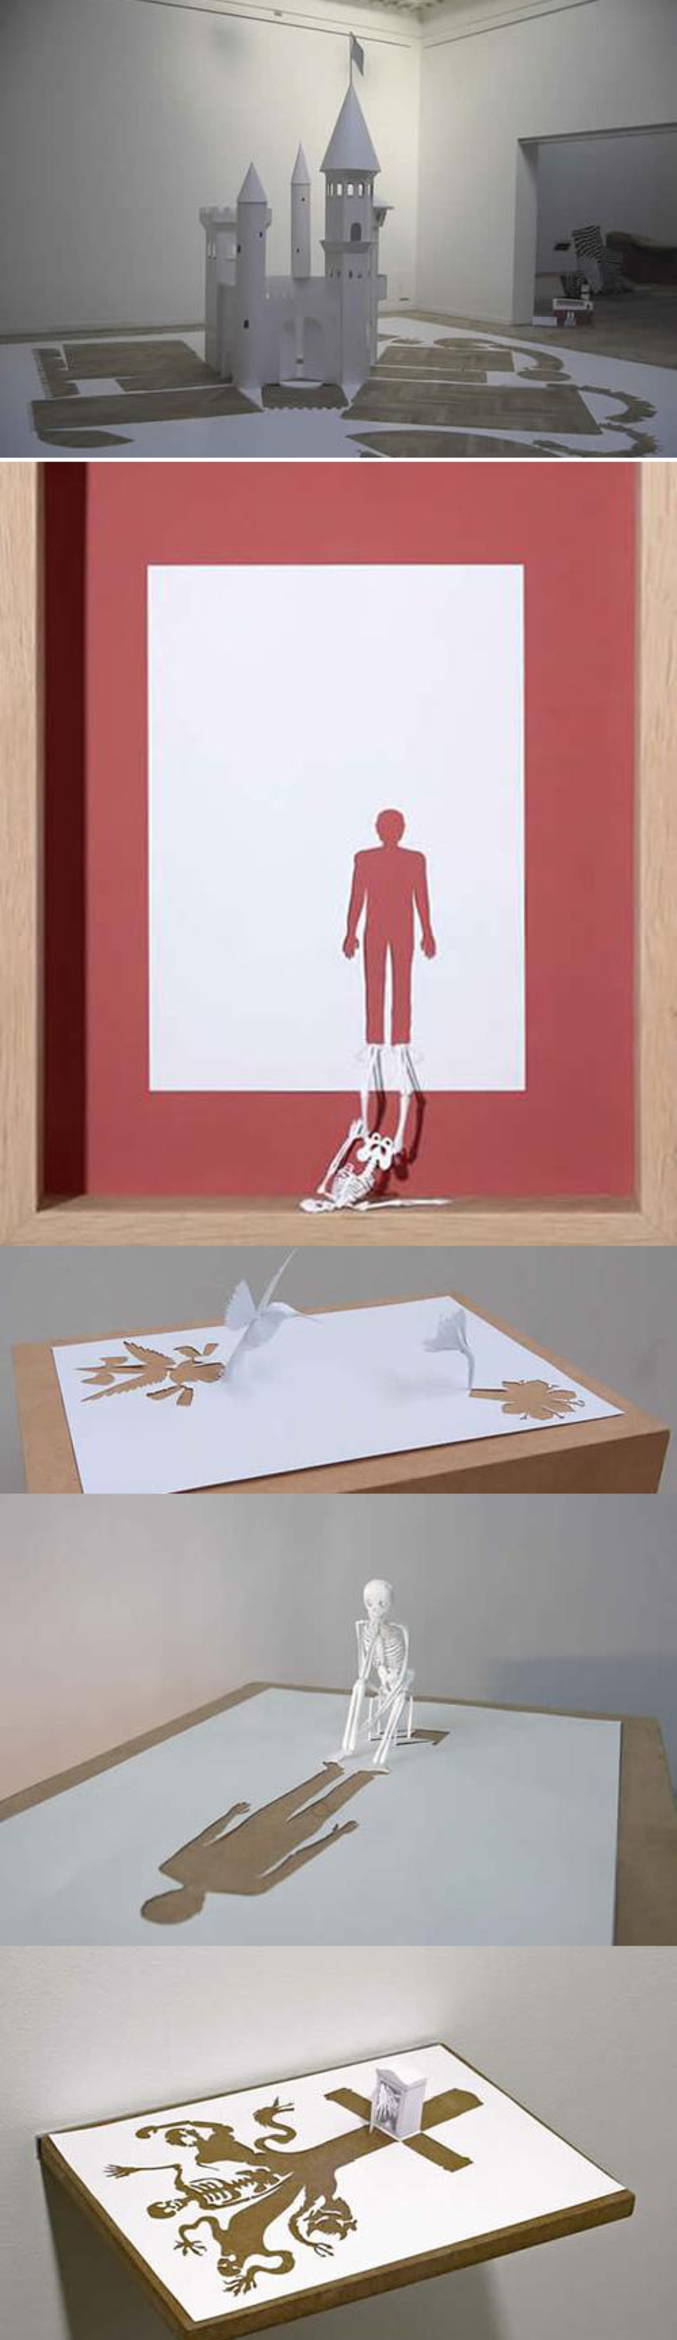 Un nouvel art : le papercut. L'art de découper le papier